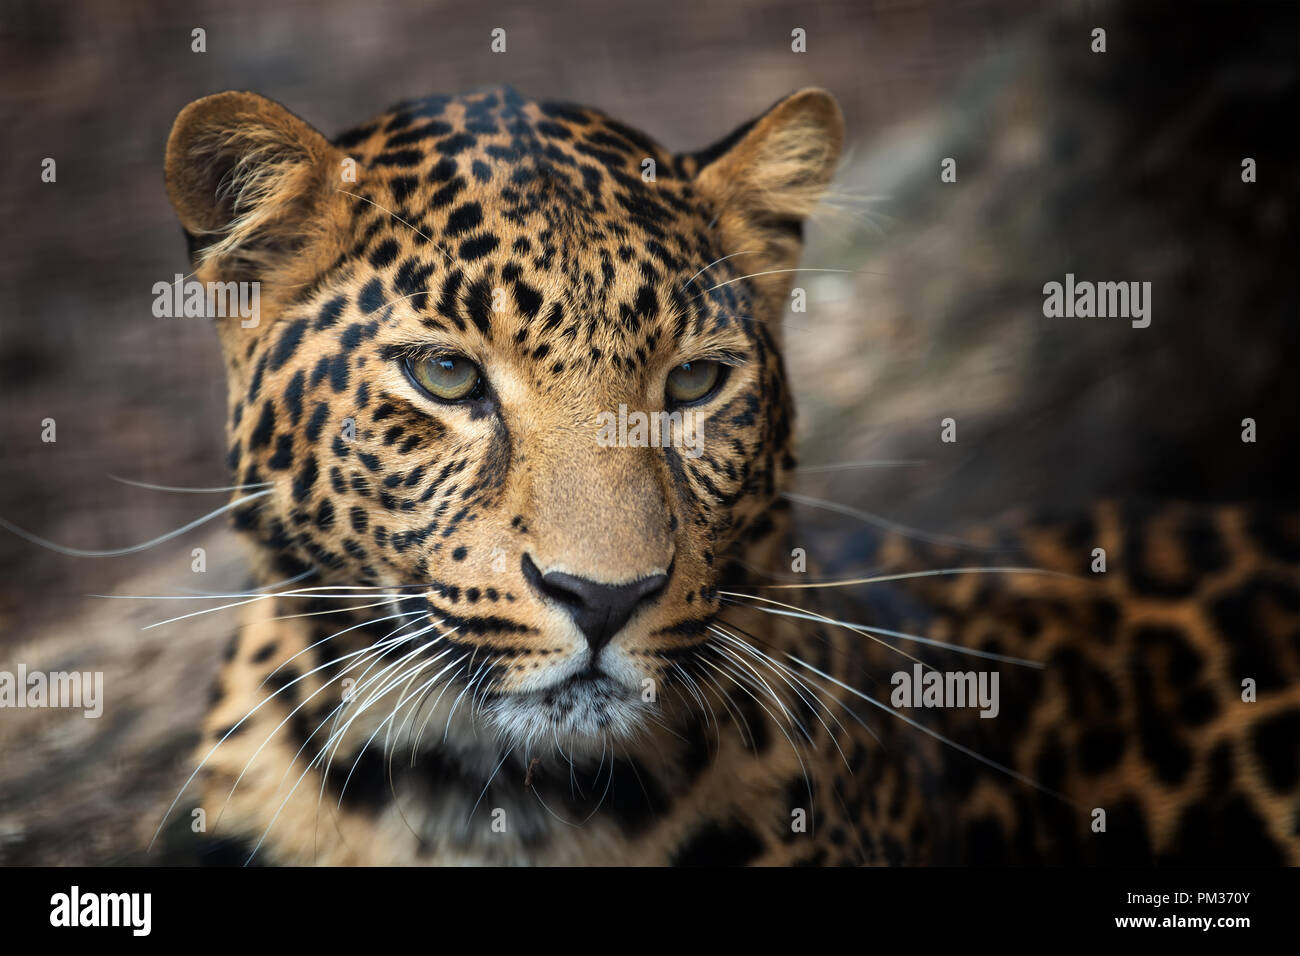 Close up portrait of young leopard Banque D'Images